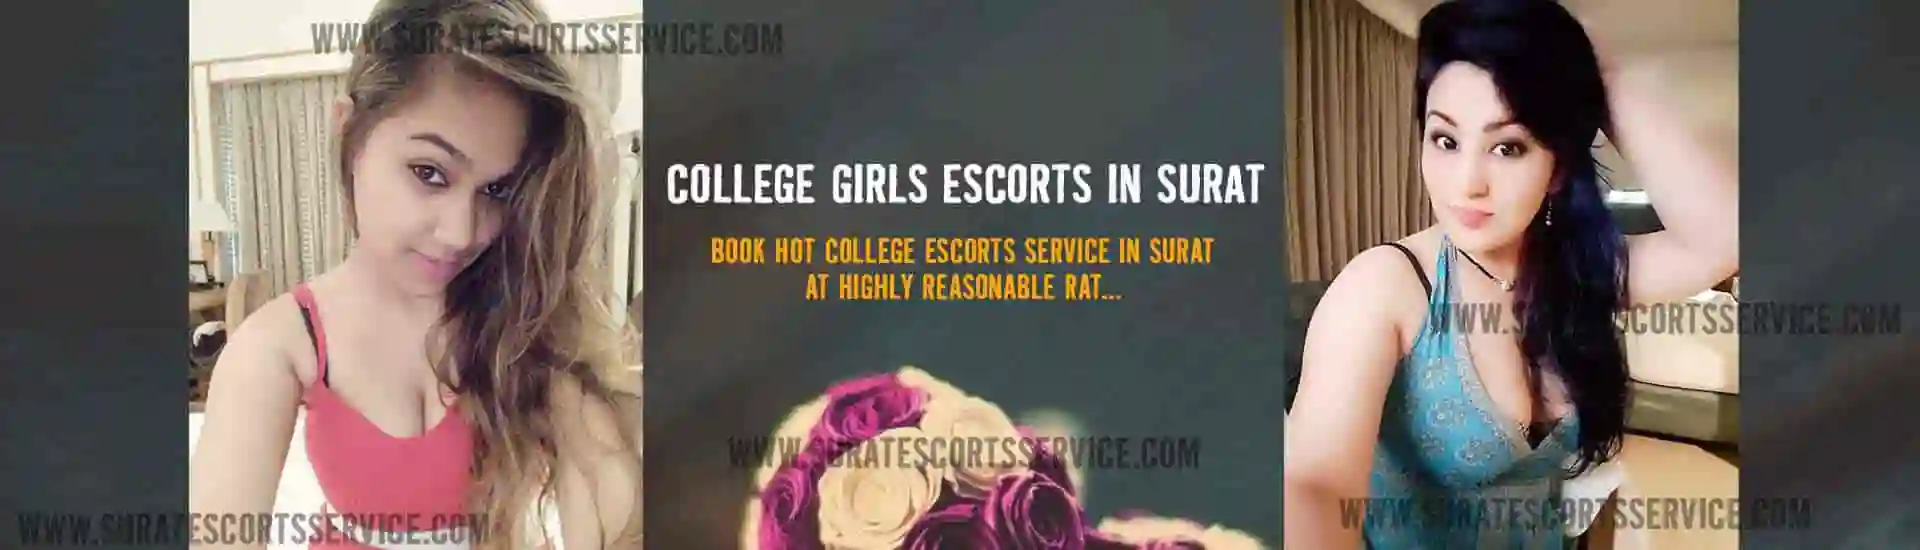 Surat College Girl Escort